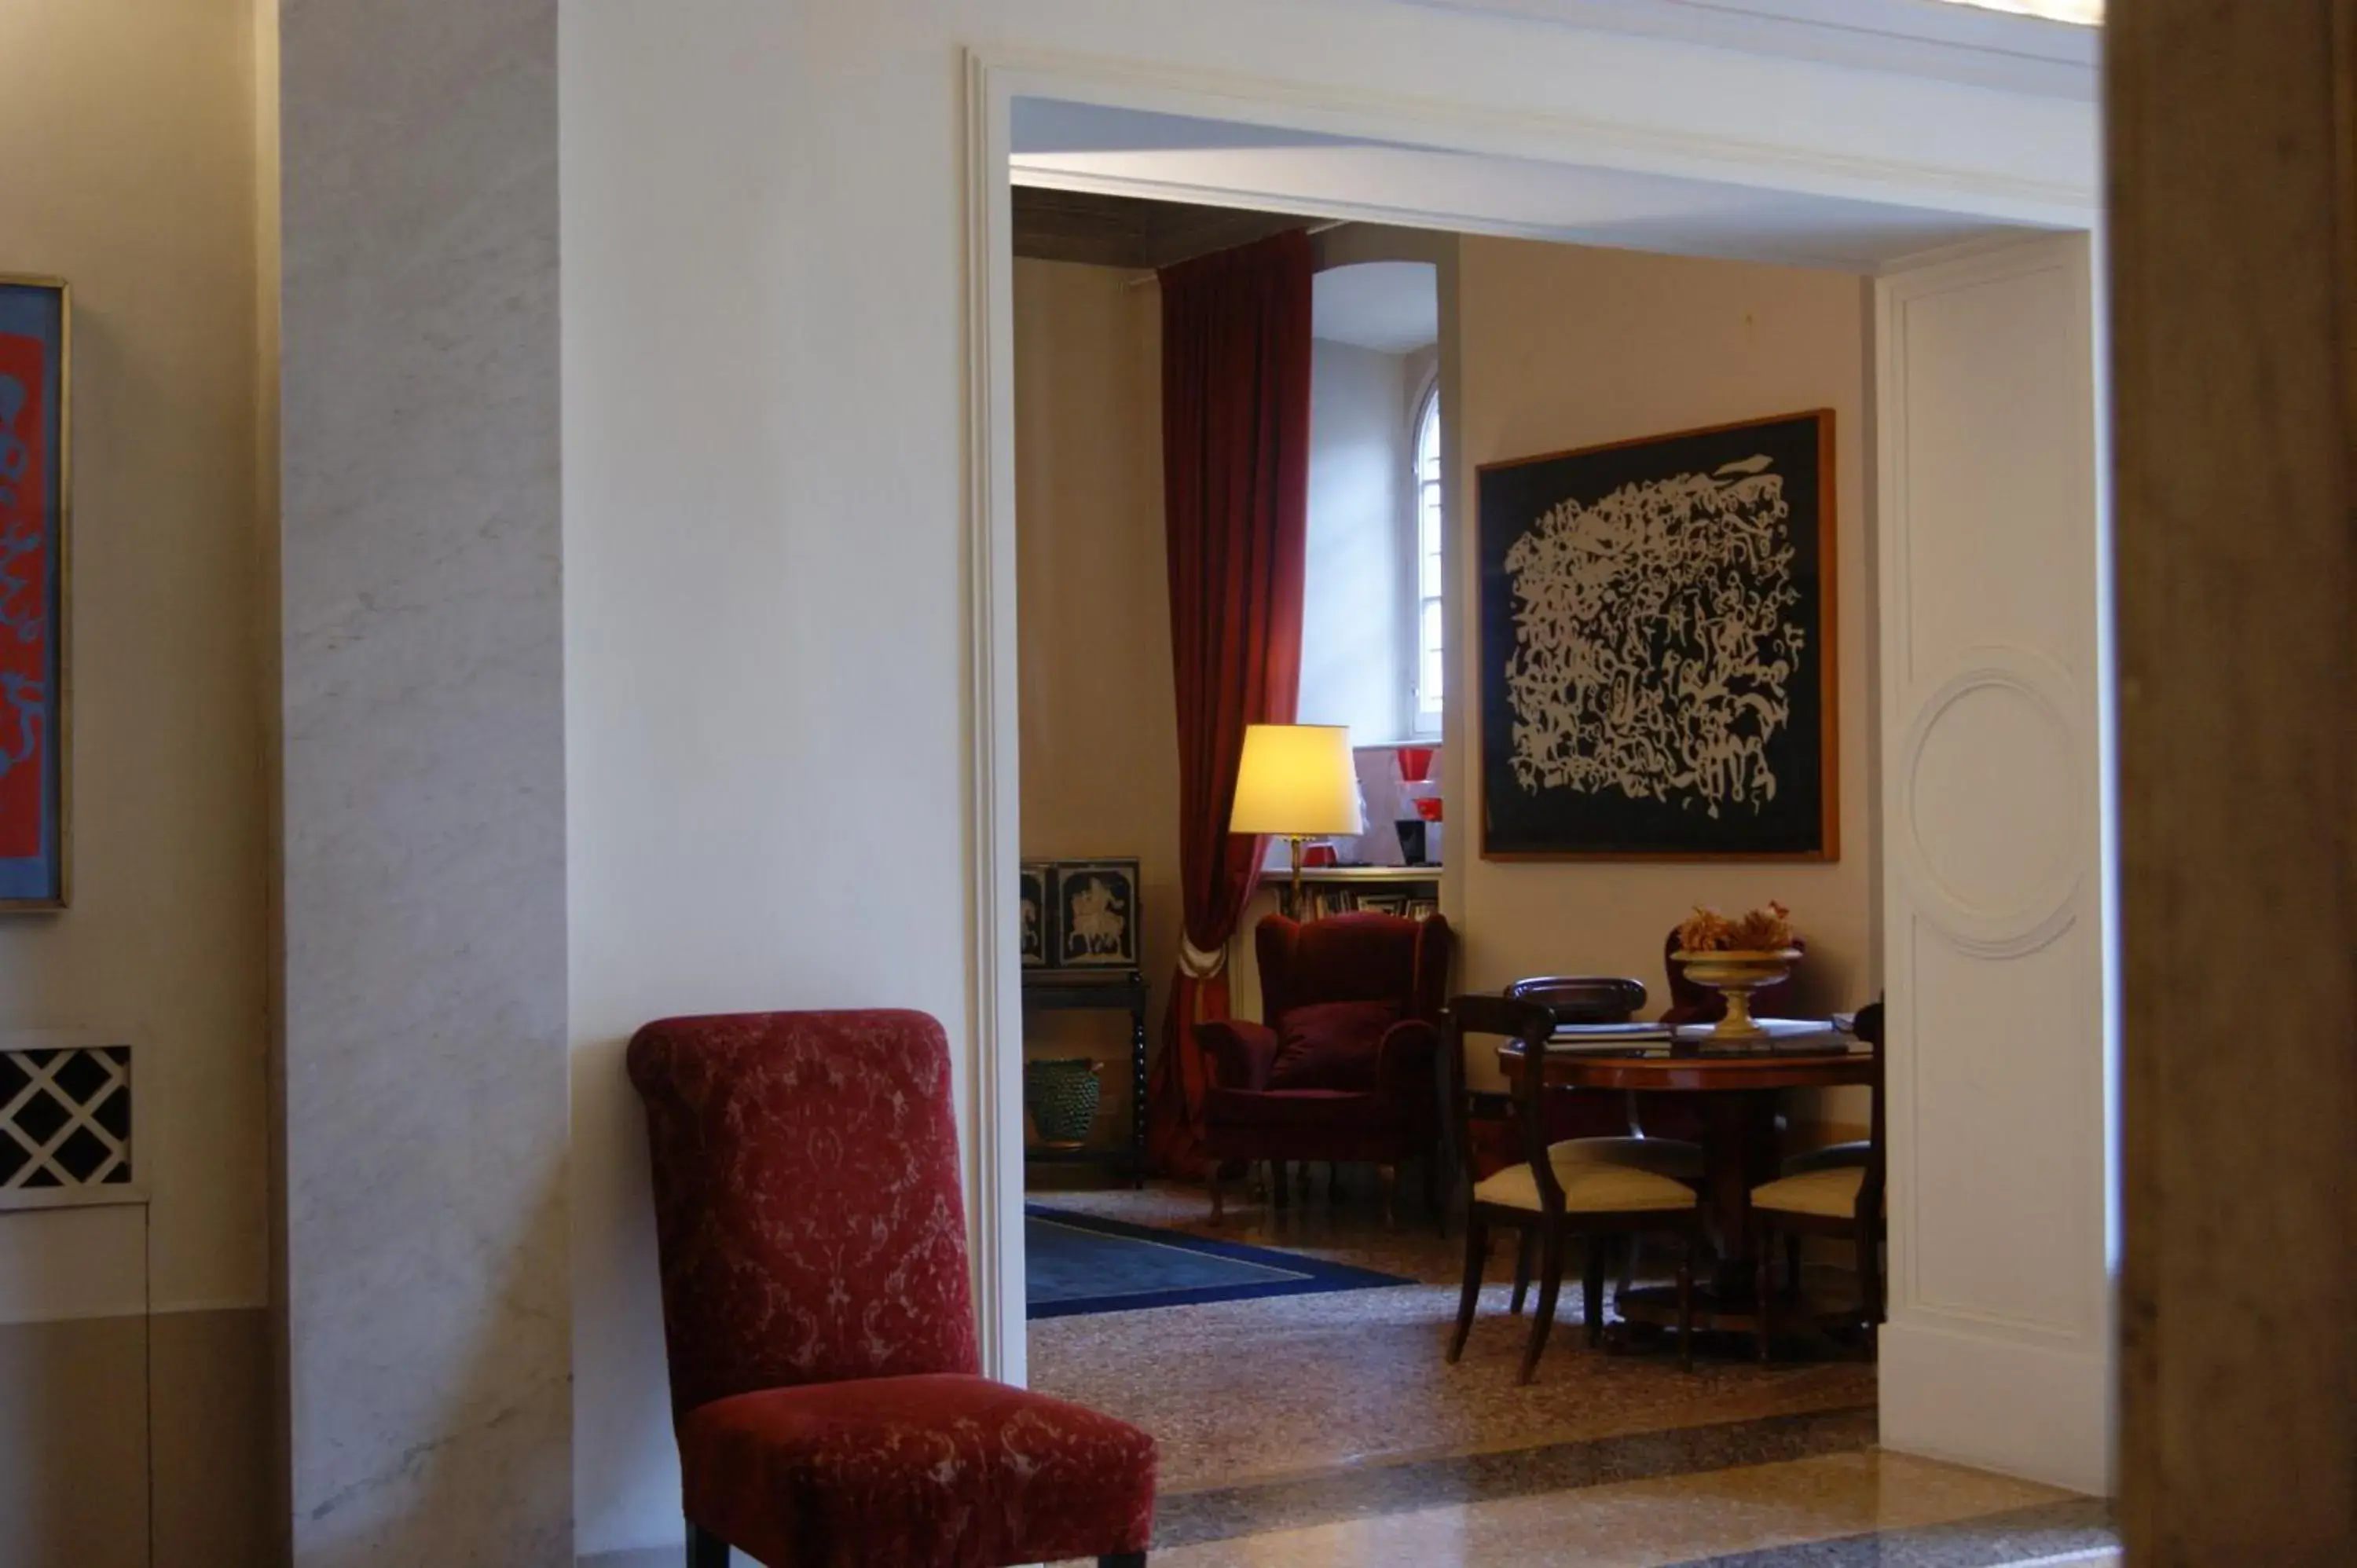 Lobby or reception, Seating Area in Albergo Pietrasanta